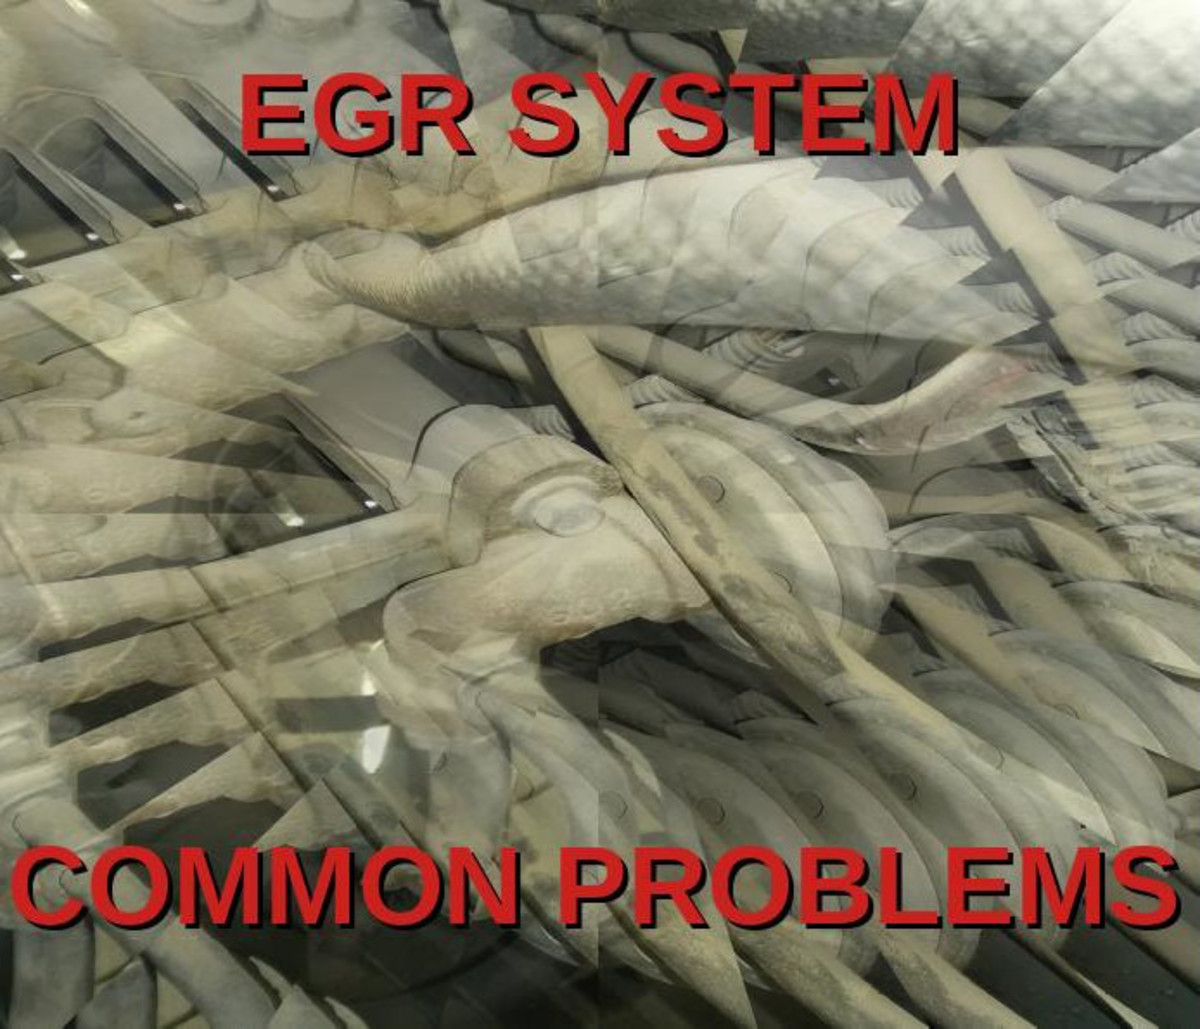 Let's explore your car's EGR system!